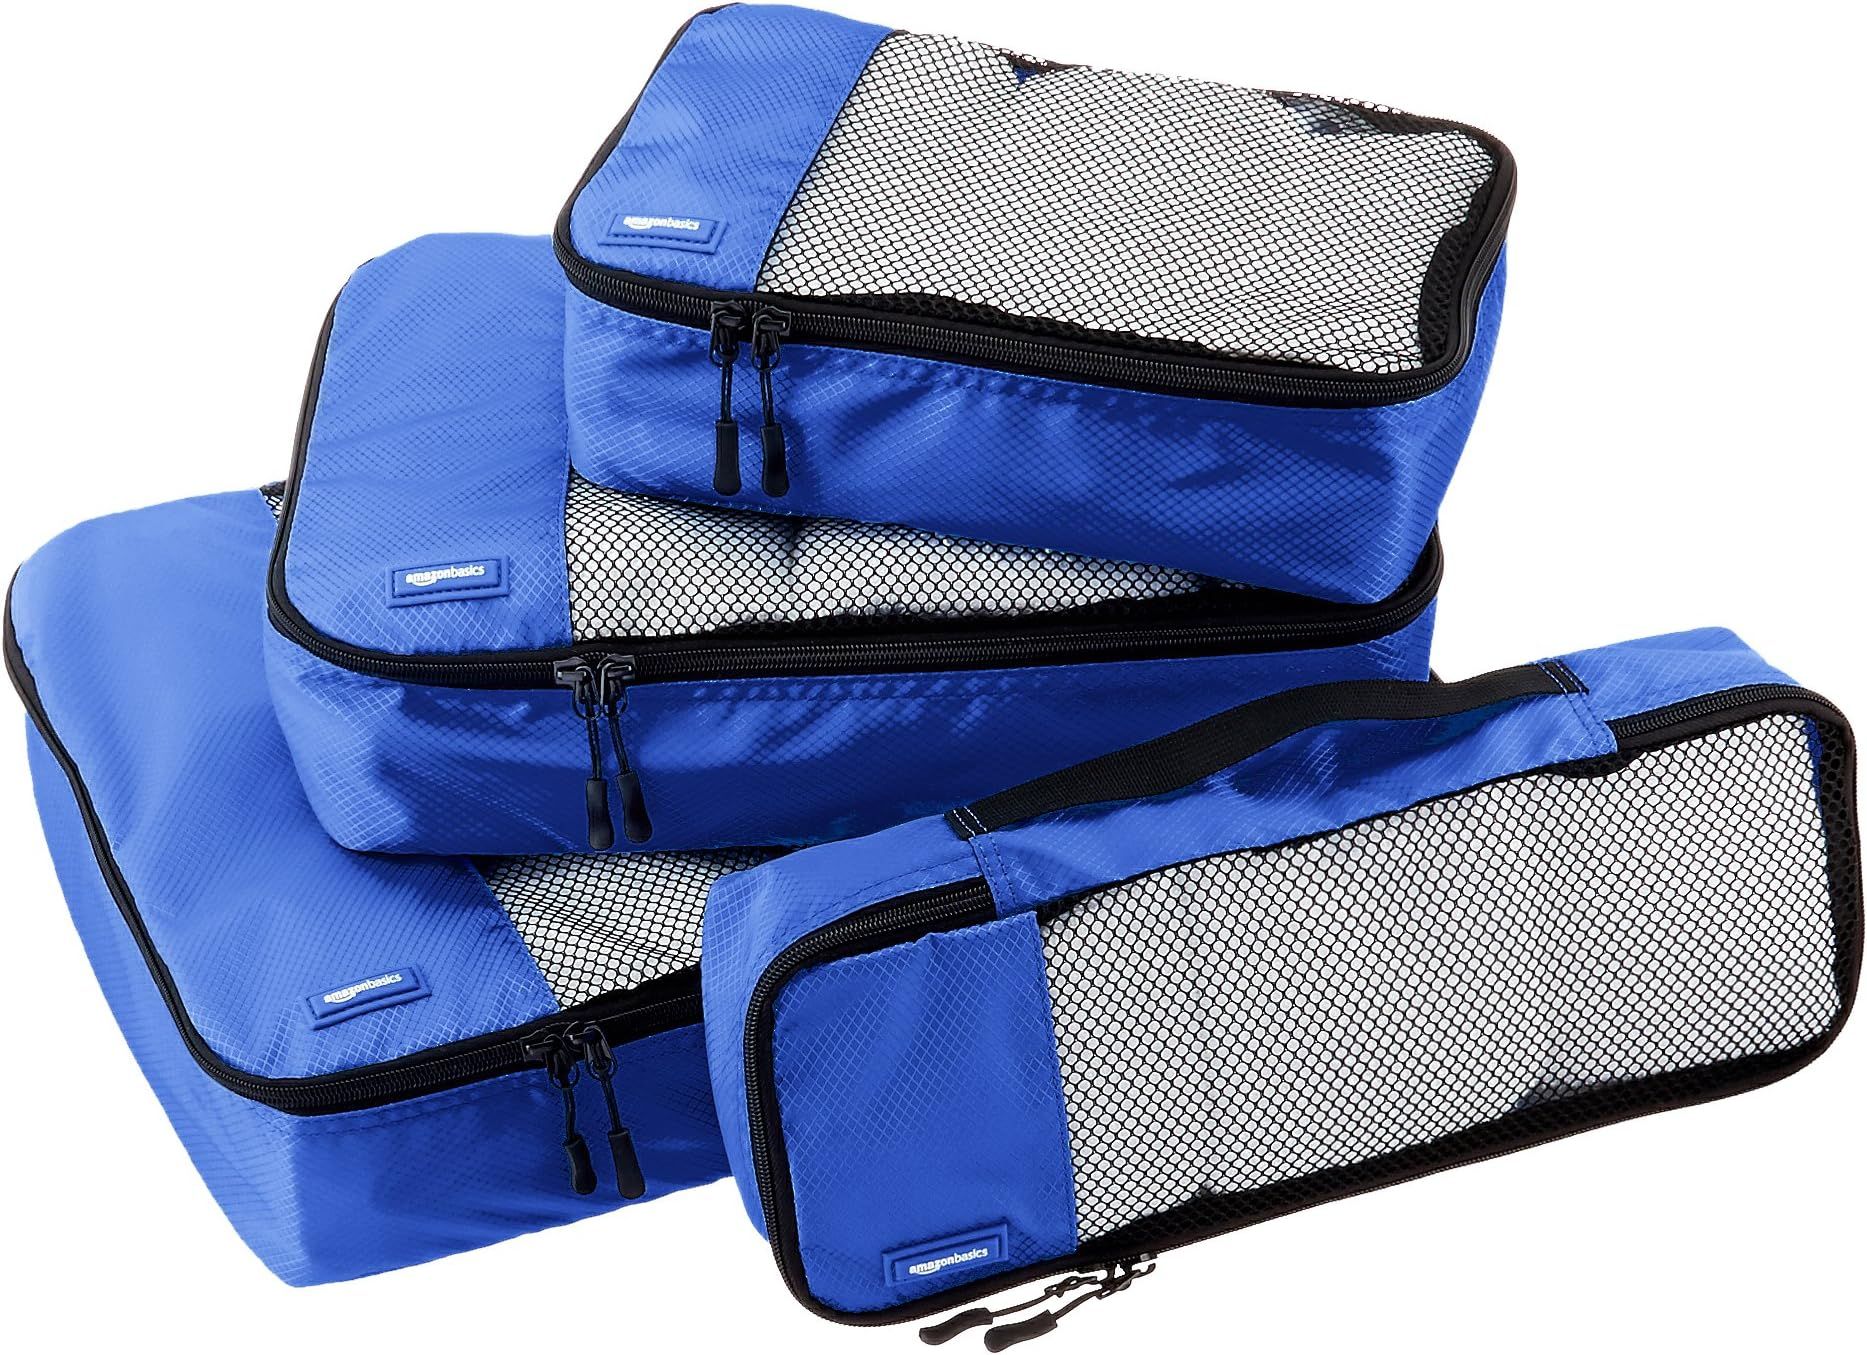 Amazon Basics 4 Piece Packing Travel Organizer Cubes Set, Blue | Amazon (US)